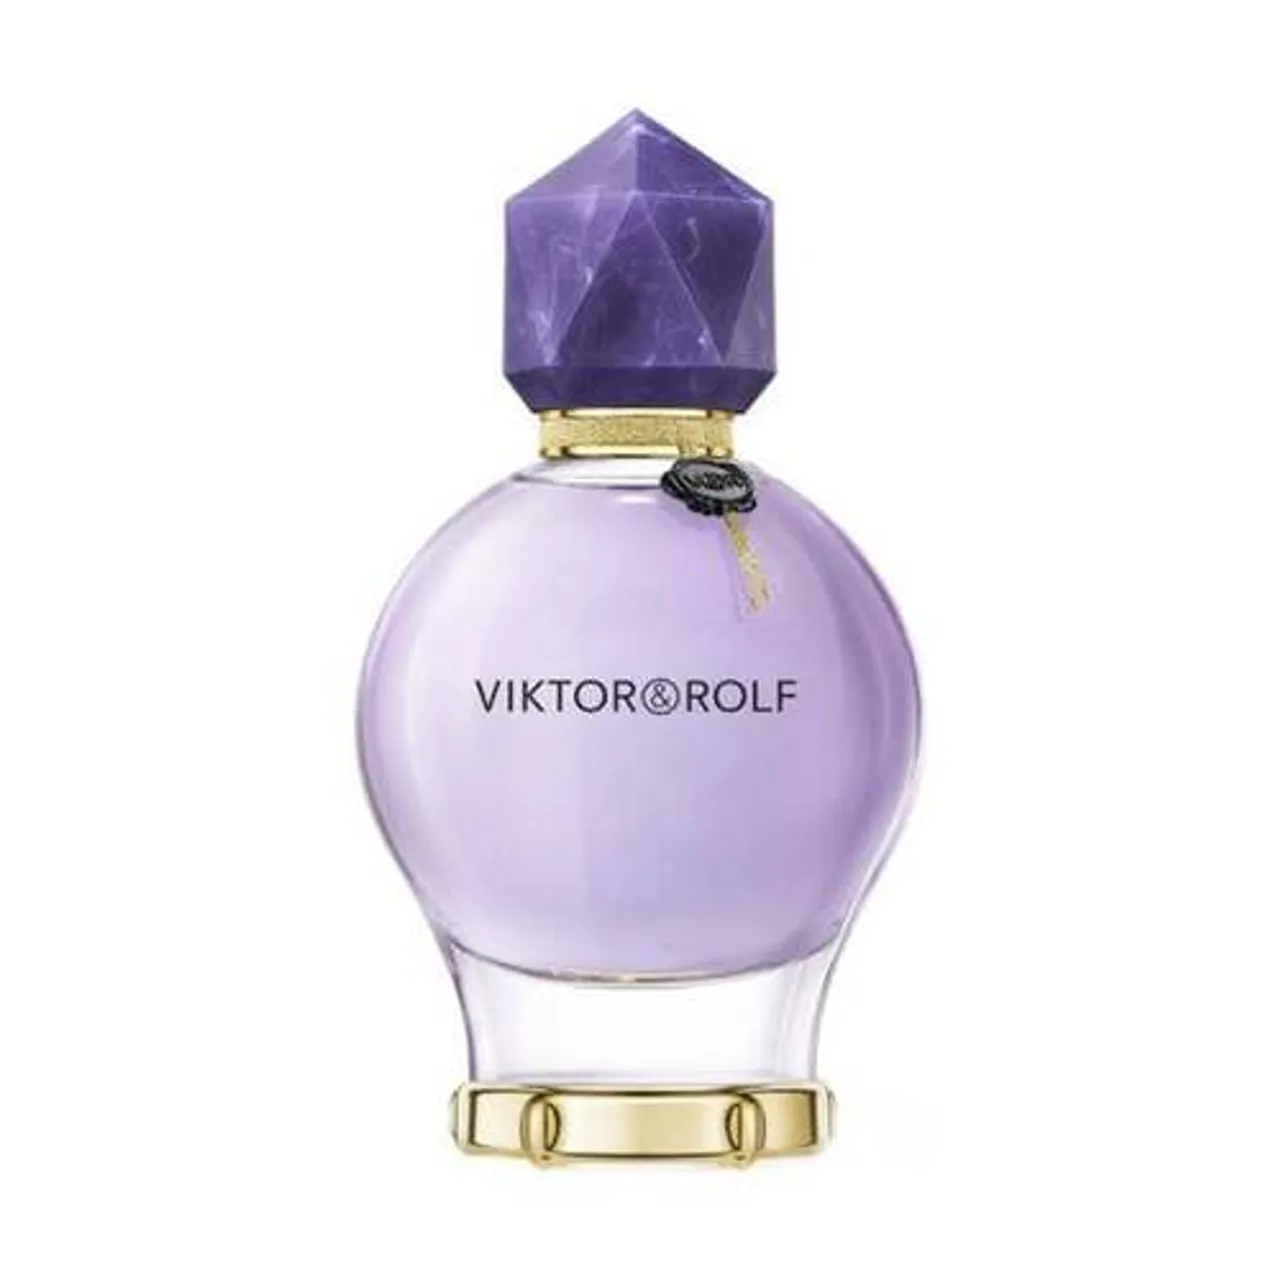 Viktor&Rolf Good Fortune Eau de Parfum Refillable 50 ml